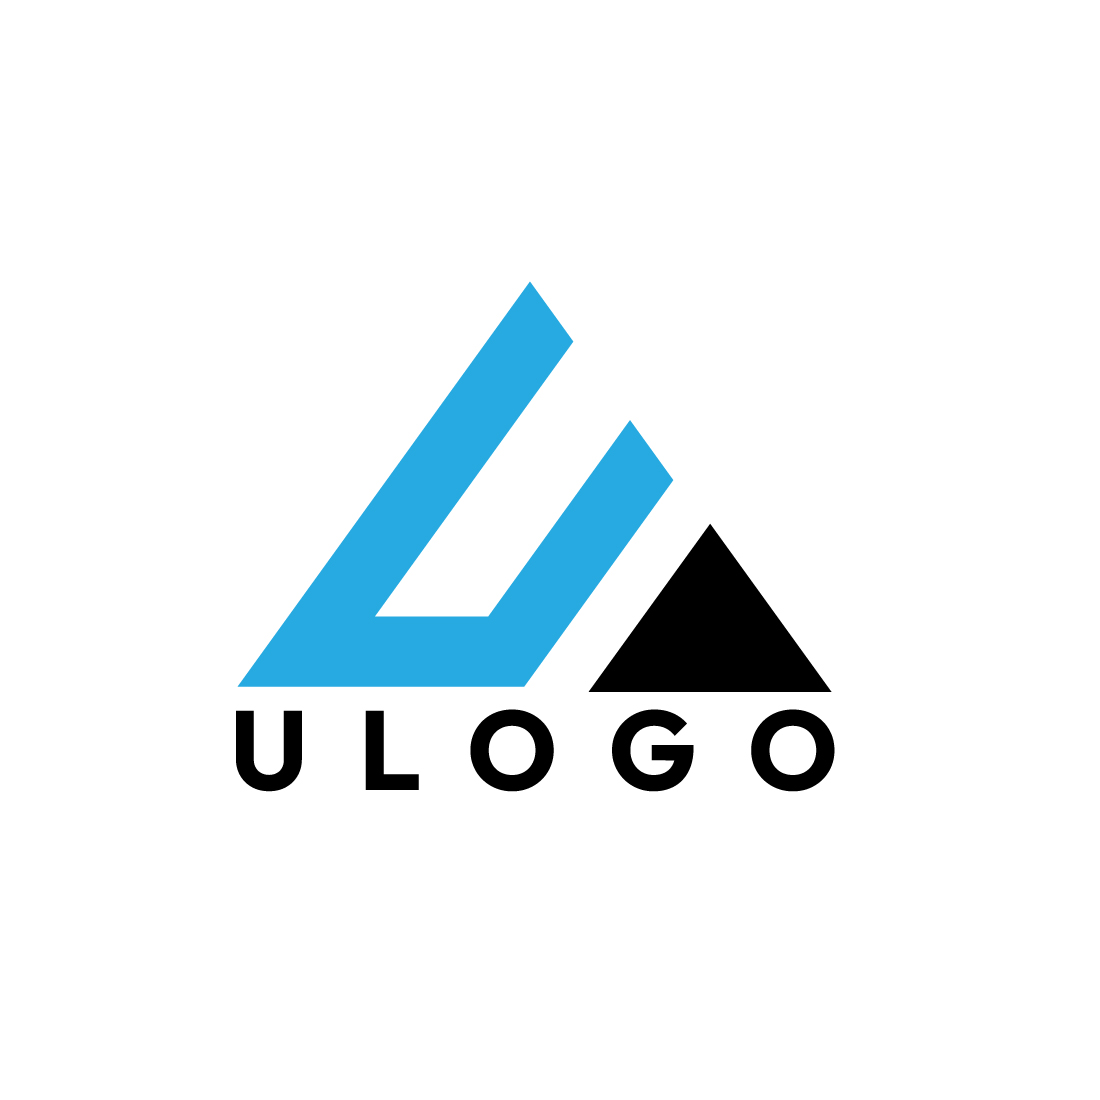 Unique U Triangle Logo Designs for Brand Identity cover image.